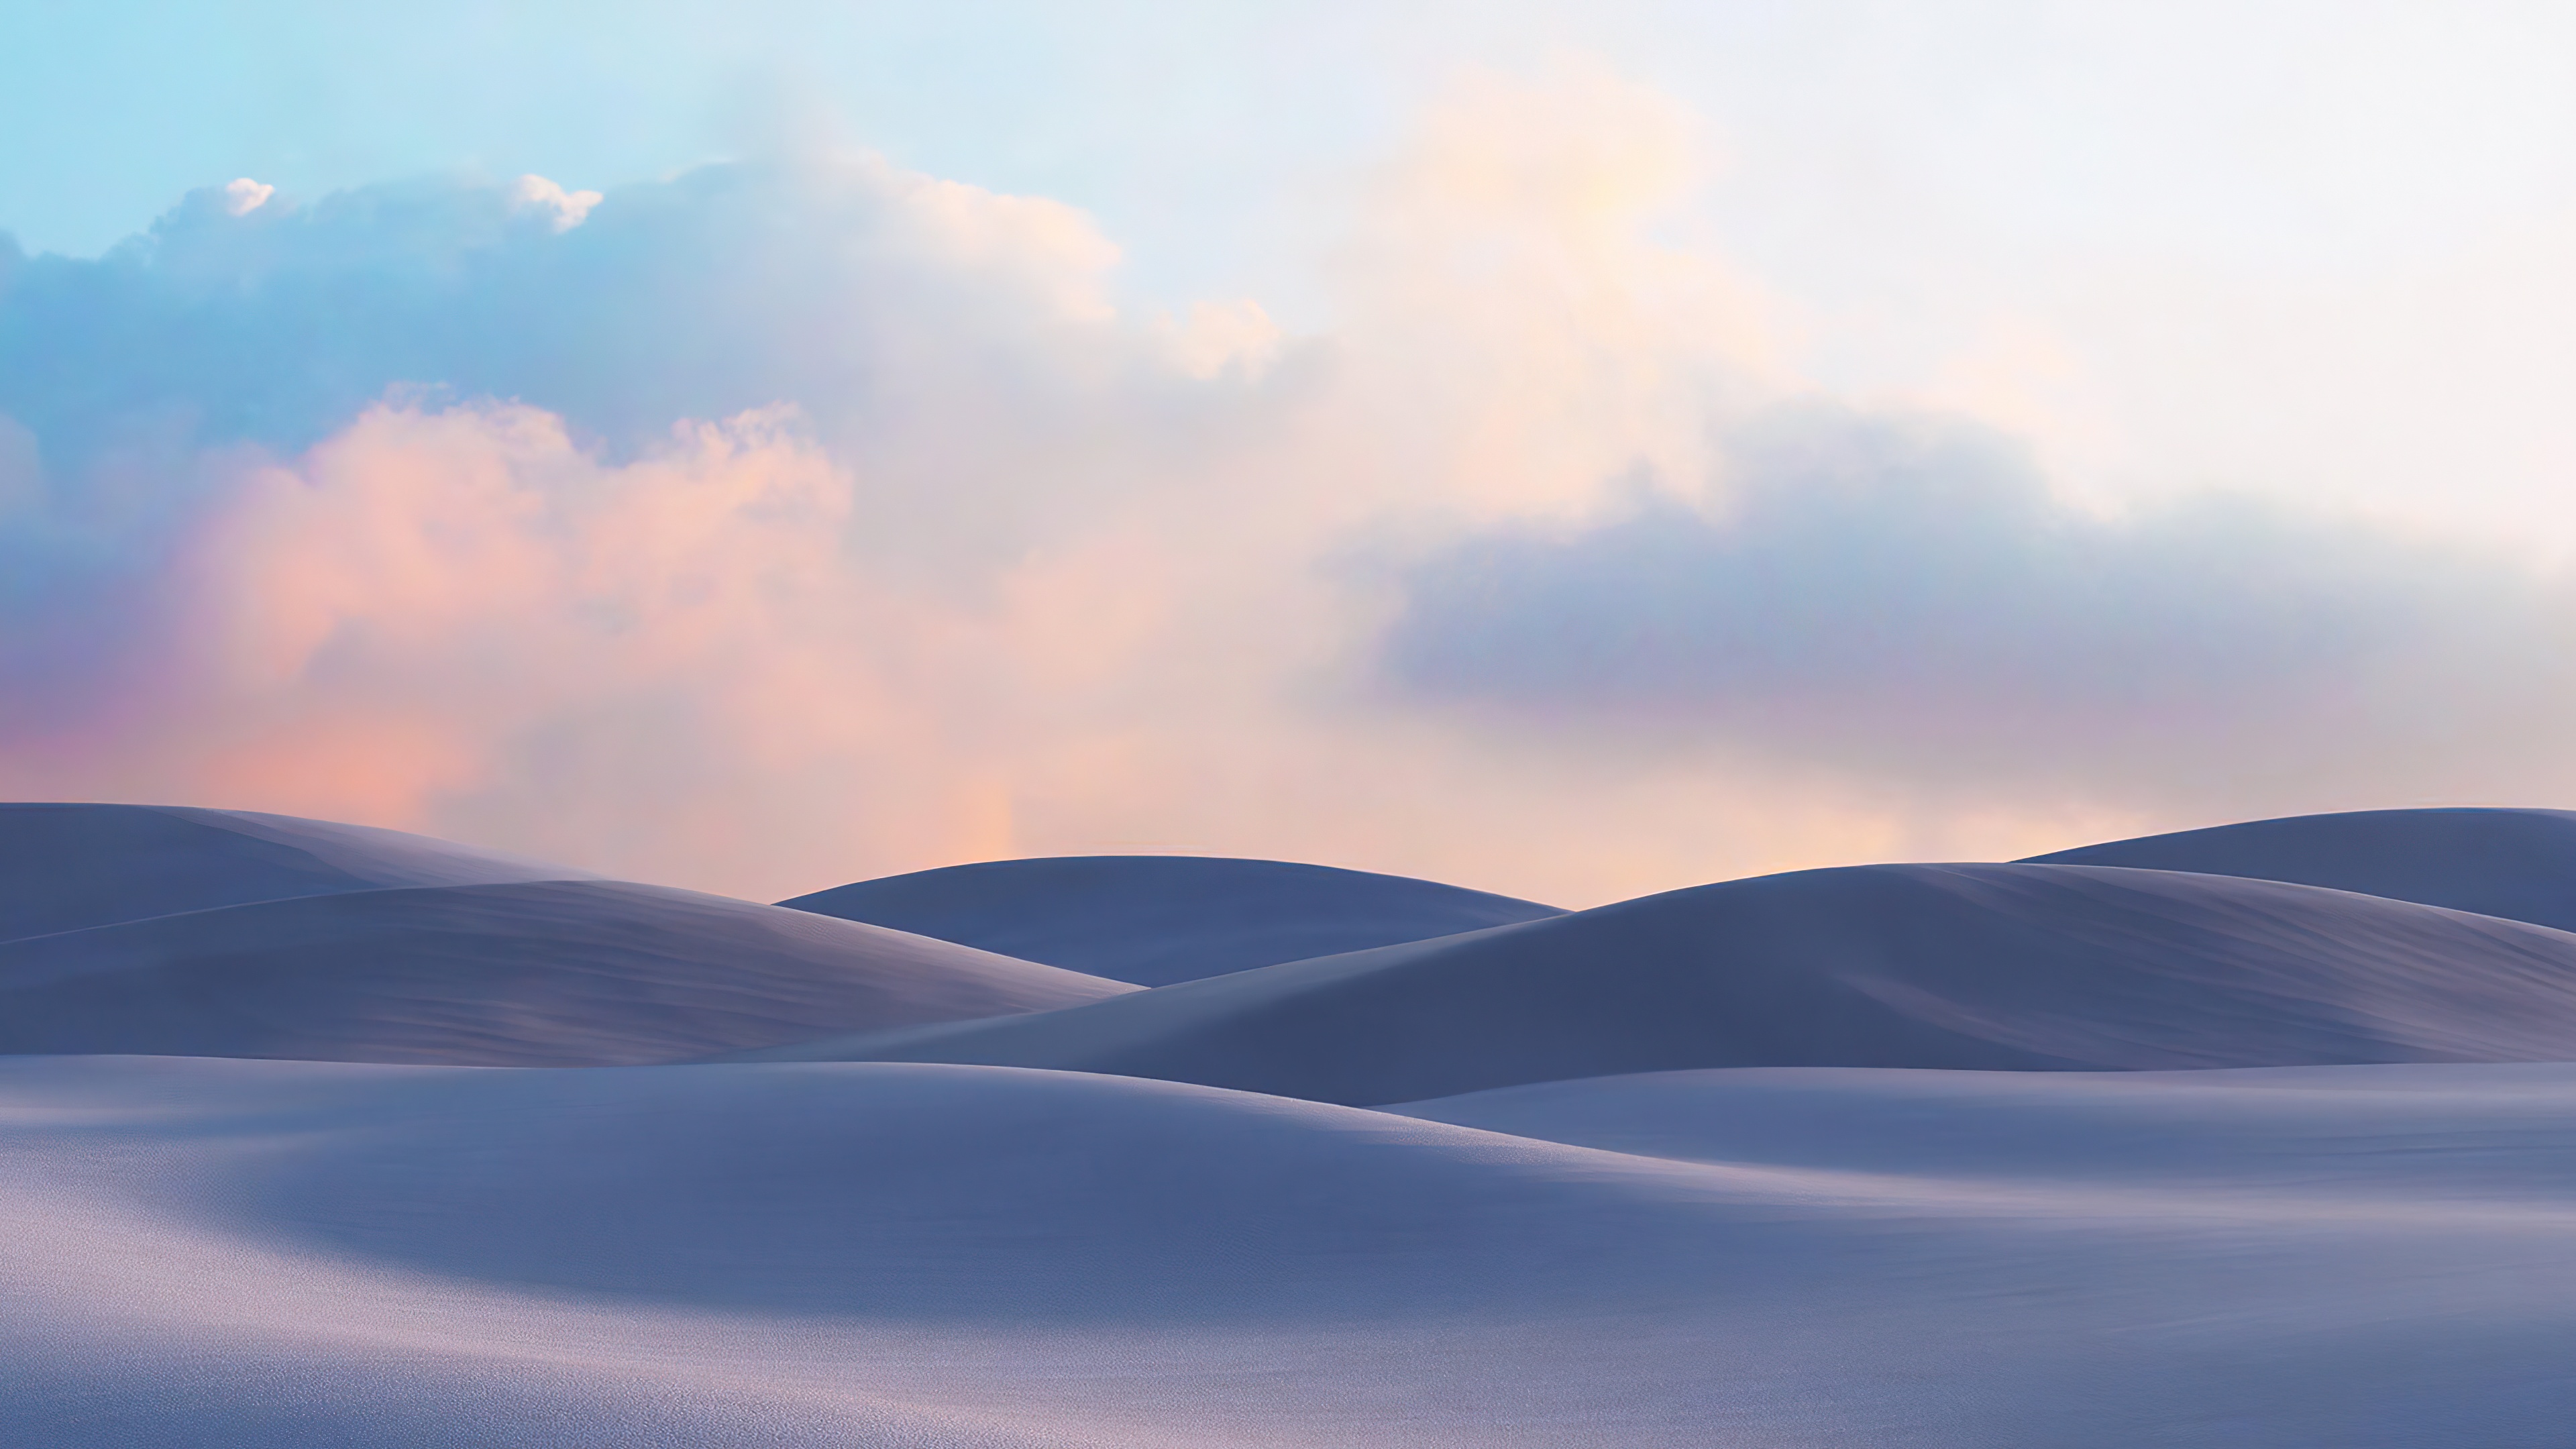 Đây là bức ảnh tuyệt đẹp về cát đồi cát 4K với độ phân giải cao. Bạn sẽ cảm thấy tự do, thư giãn và nhìn thấy một vẻ đẹp hoang sơ chưa từng thấy trước đây.